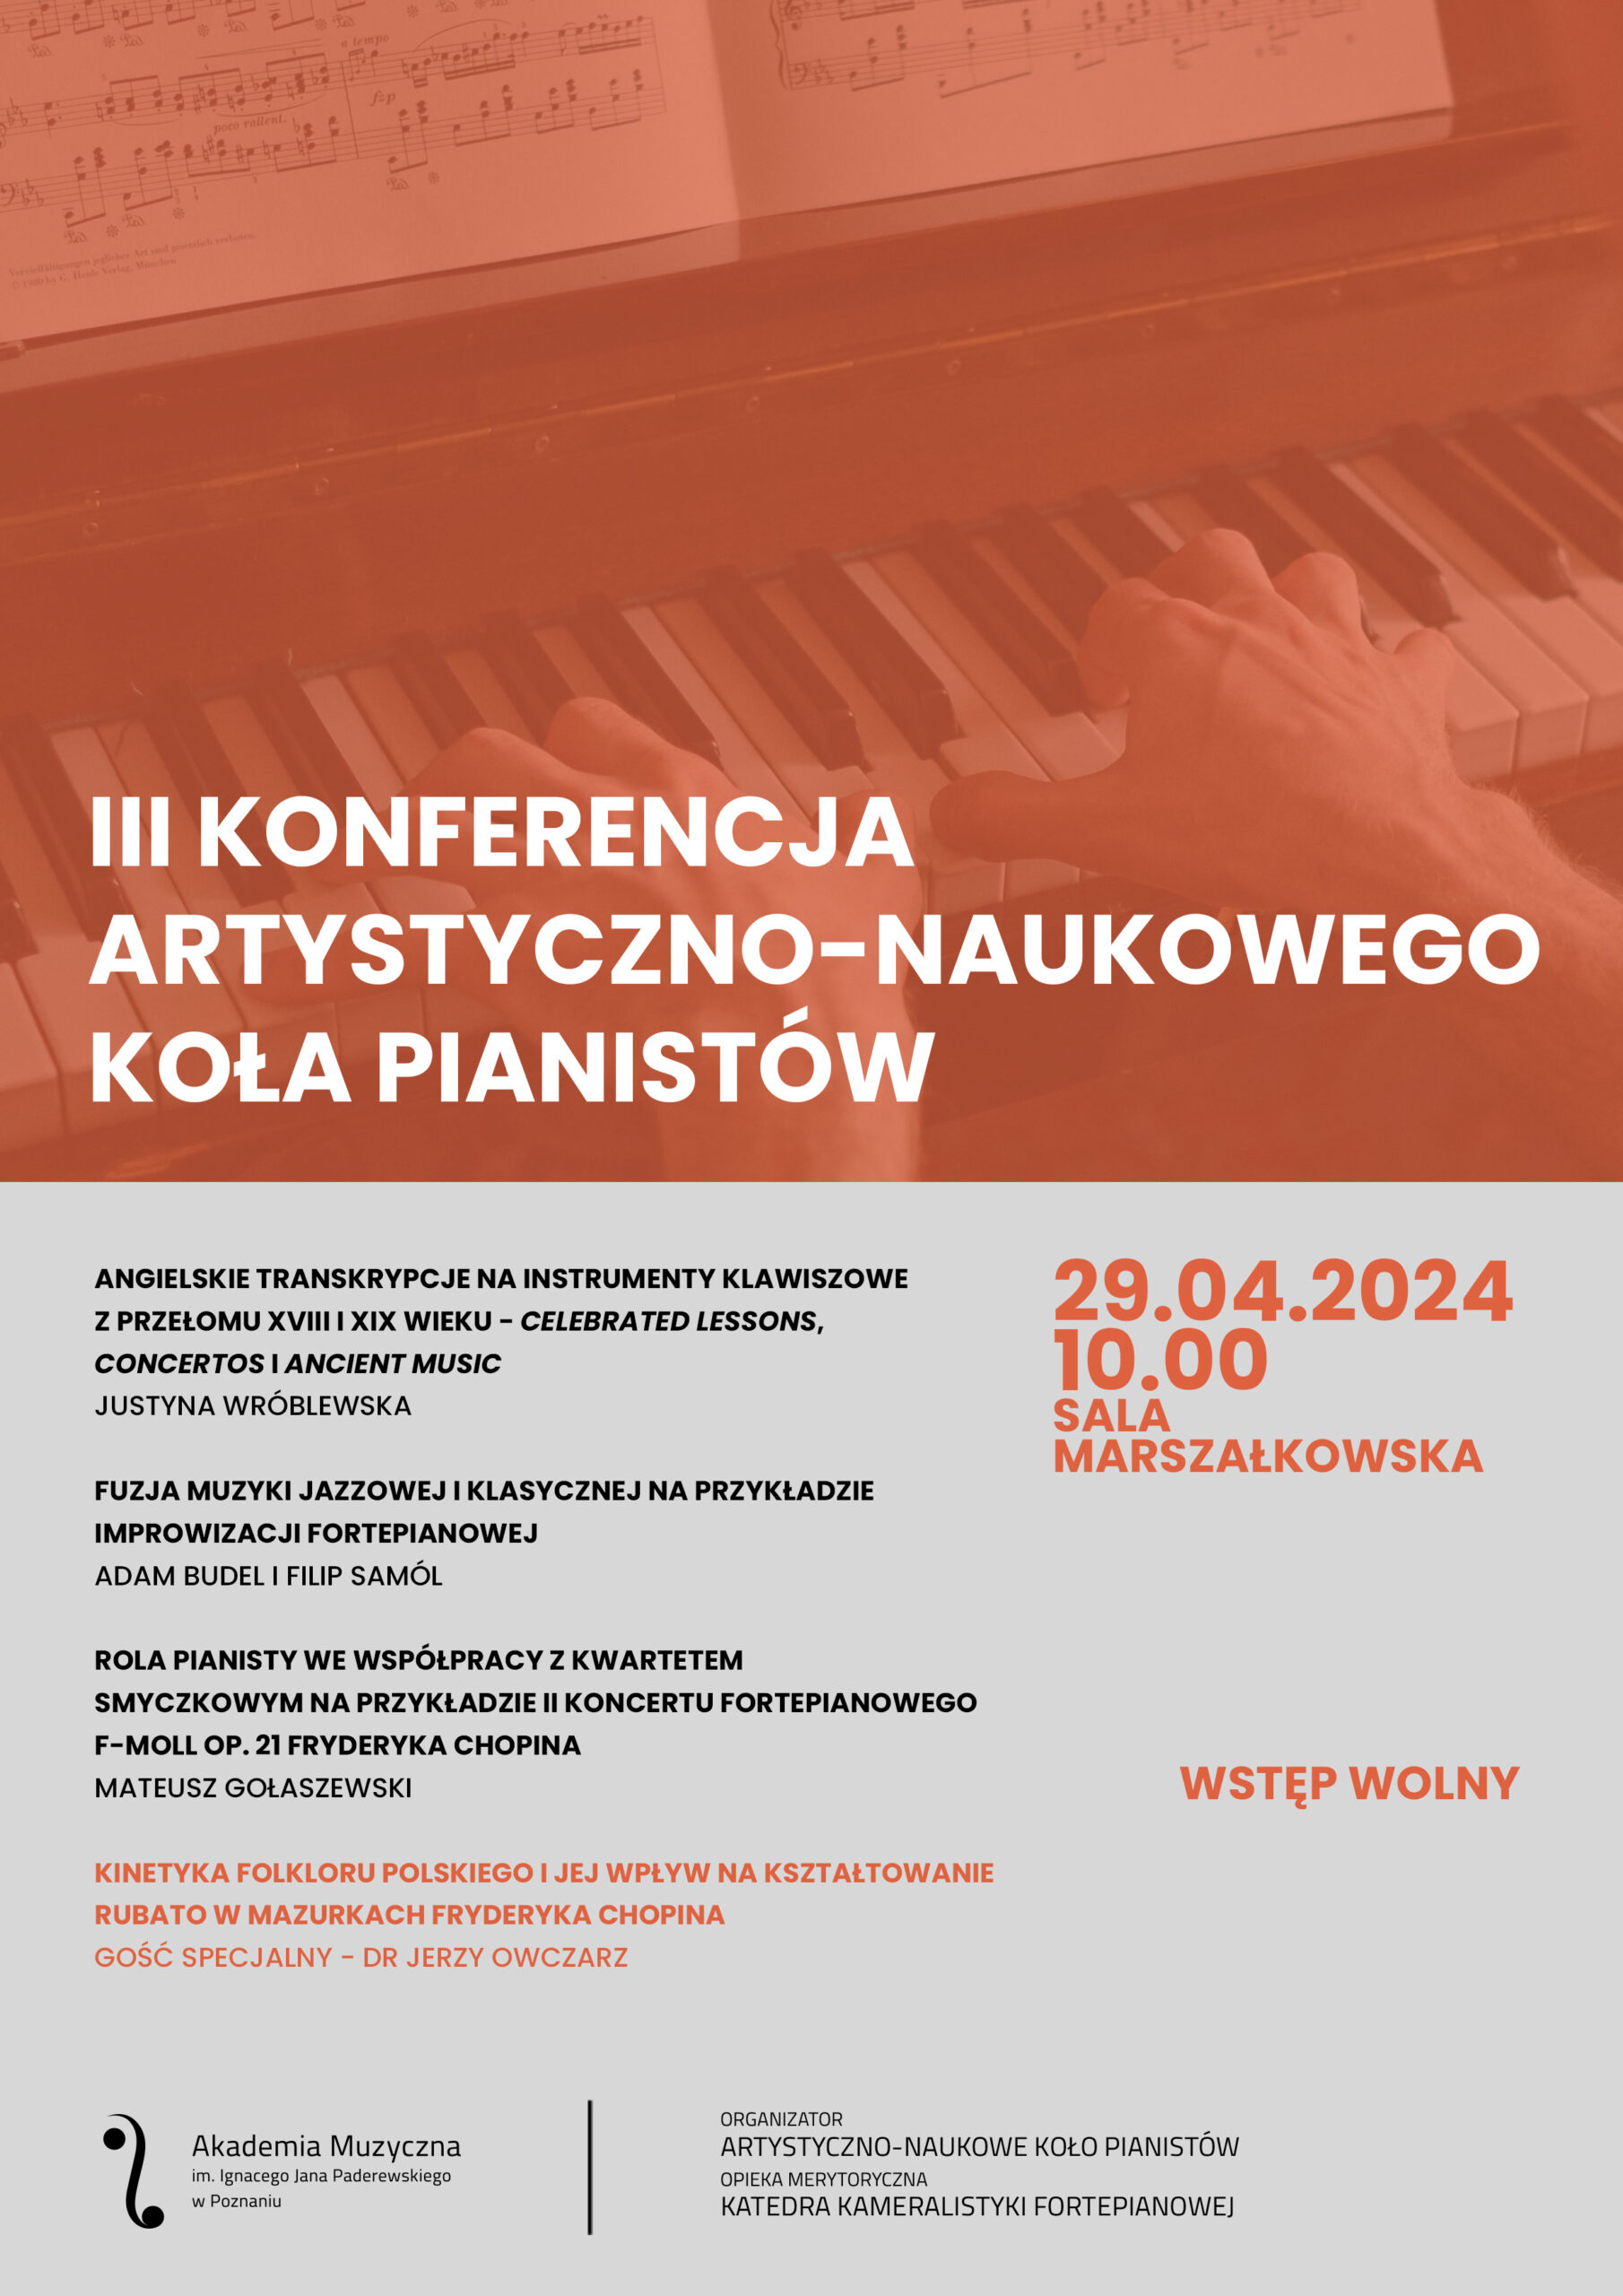 Afisz zawiera informacje na temat Konferencji Artystyczno-Naukowego Koła Pianistów w dniu 29 kwietnia 2024